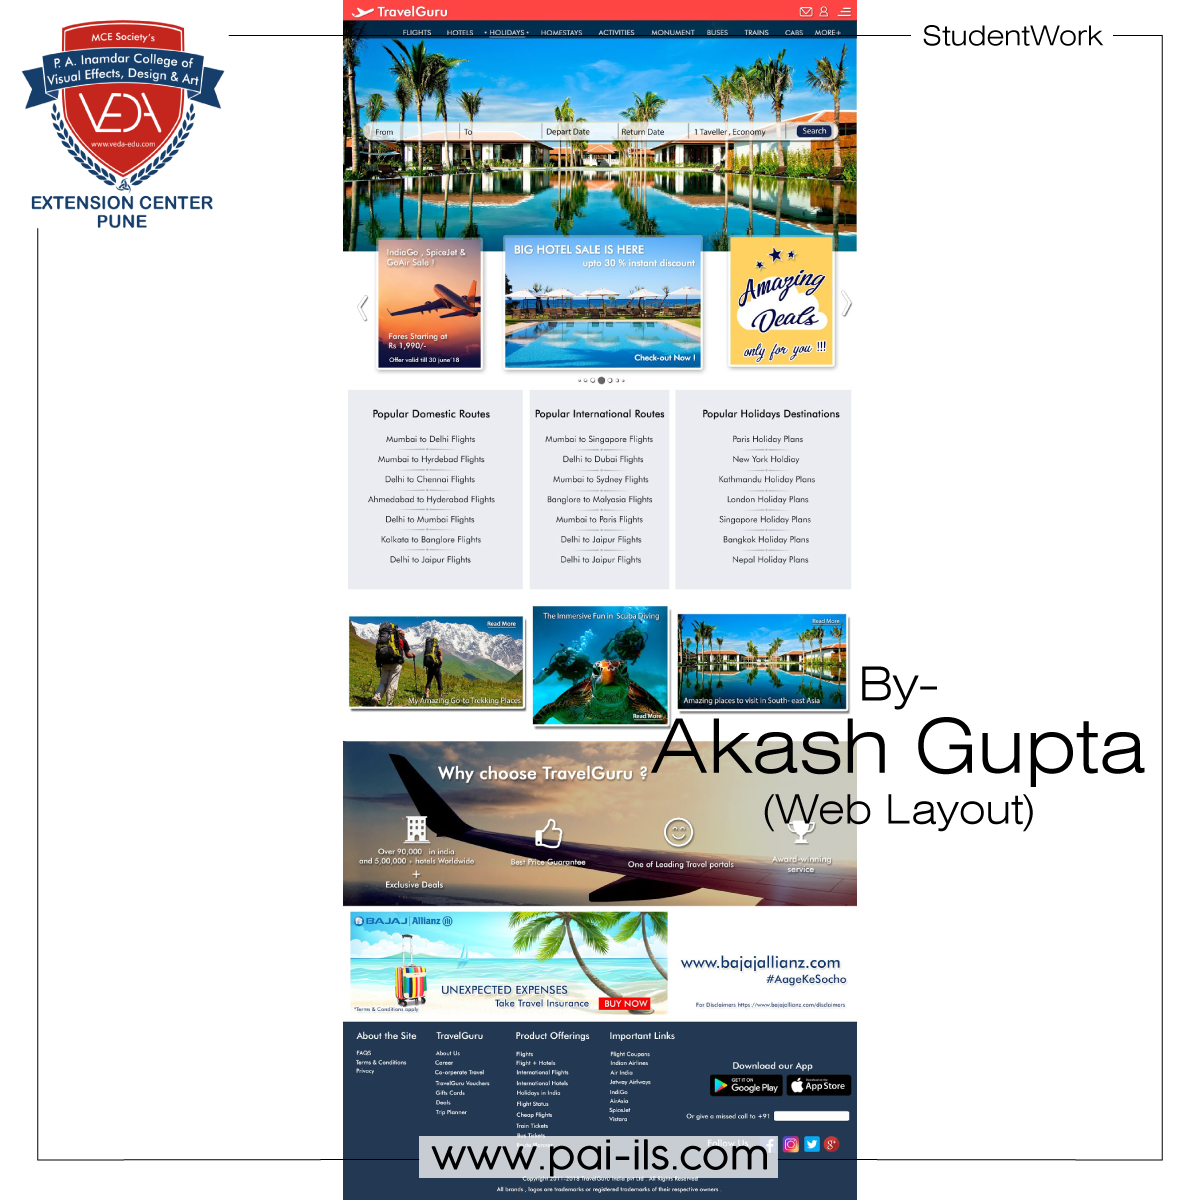 Akash-Gupta-(-Web-Layout-)-1